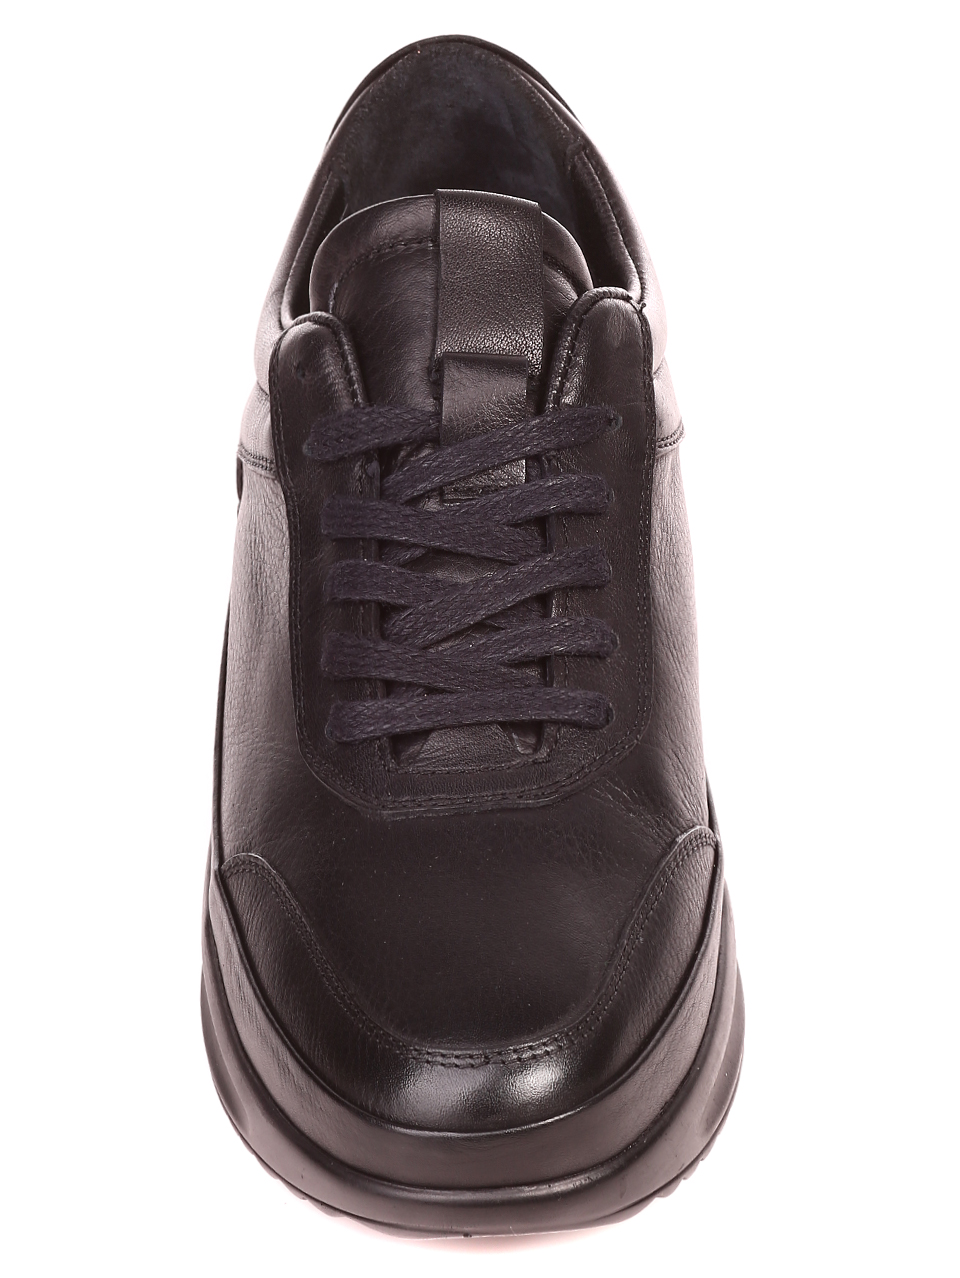 Ежедневни мъжки обувки от естествена кожа 7AT-21849 black